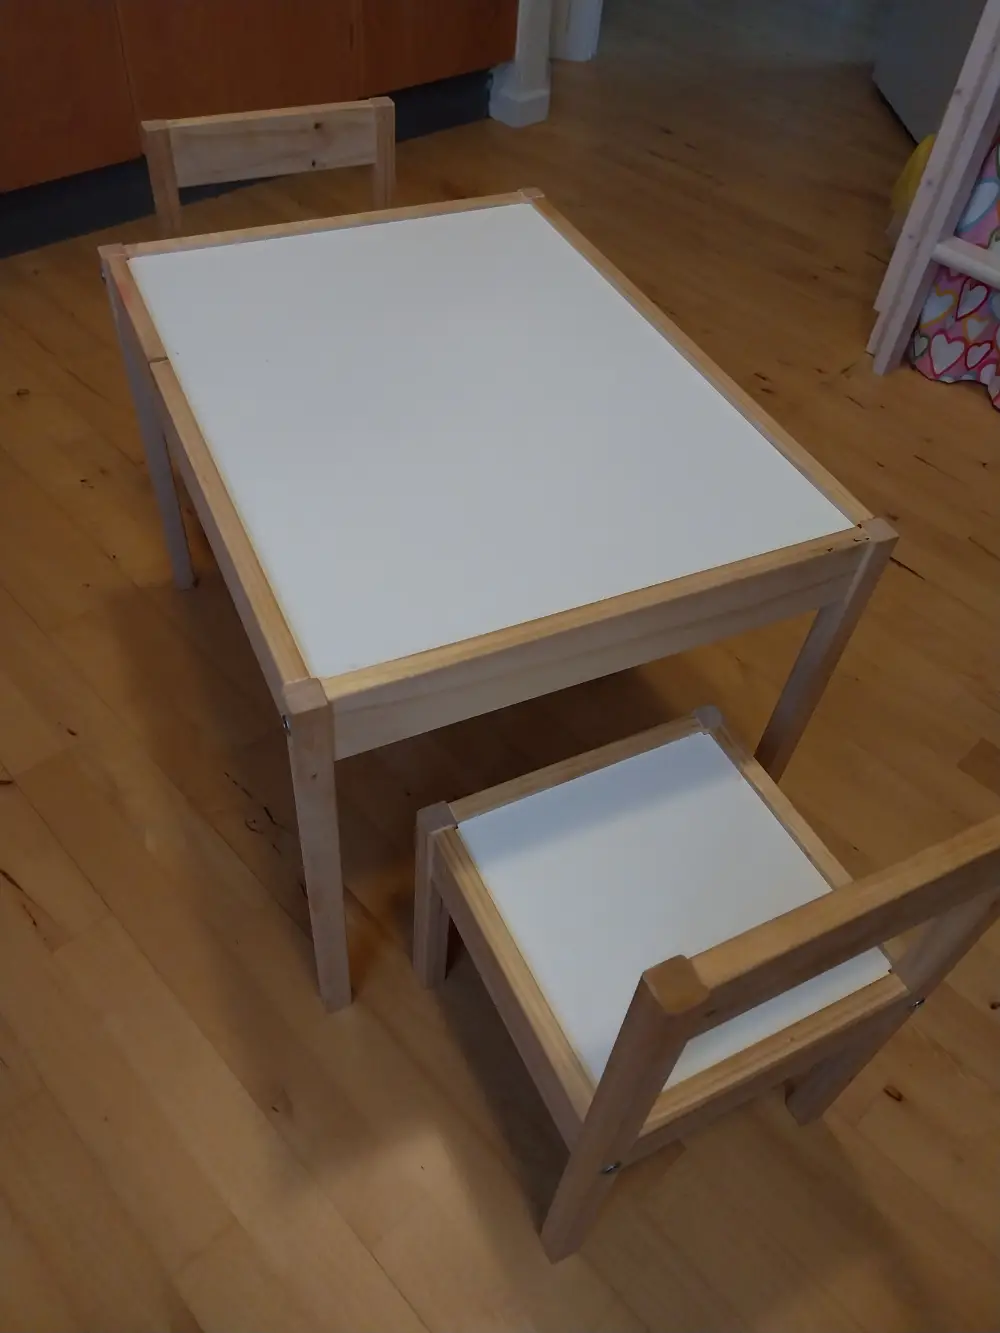 IKEA Bord og stole